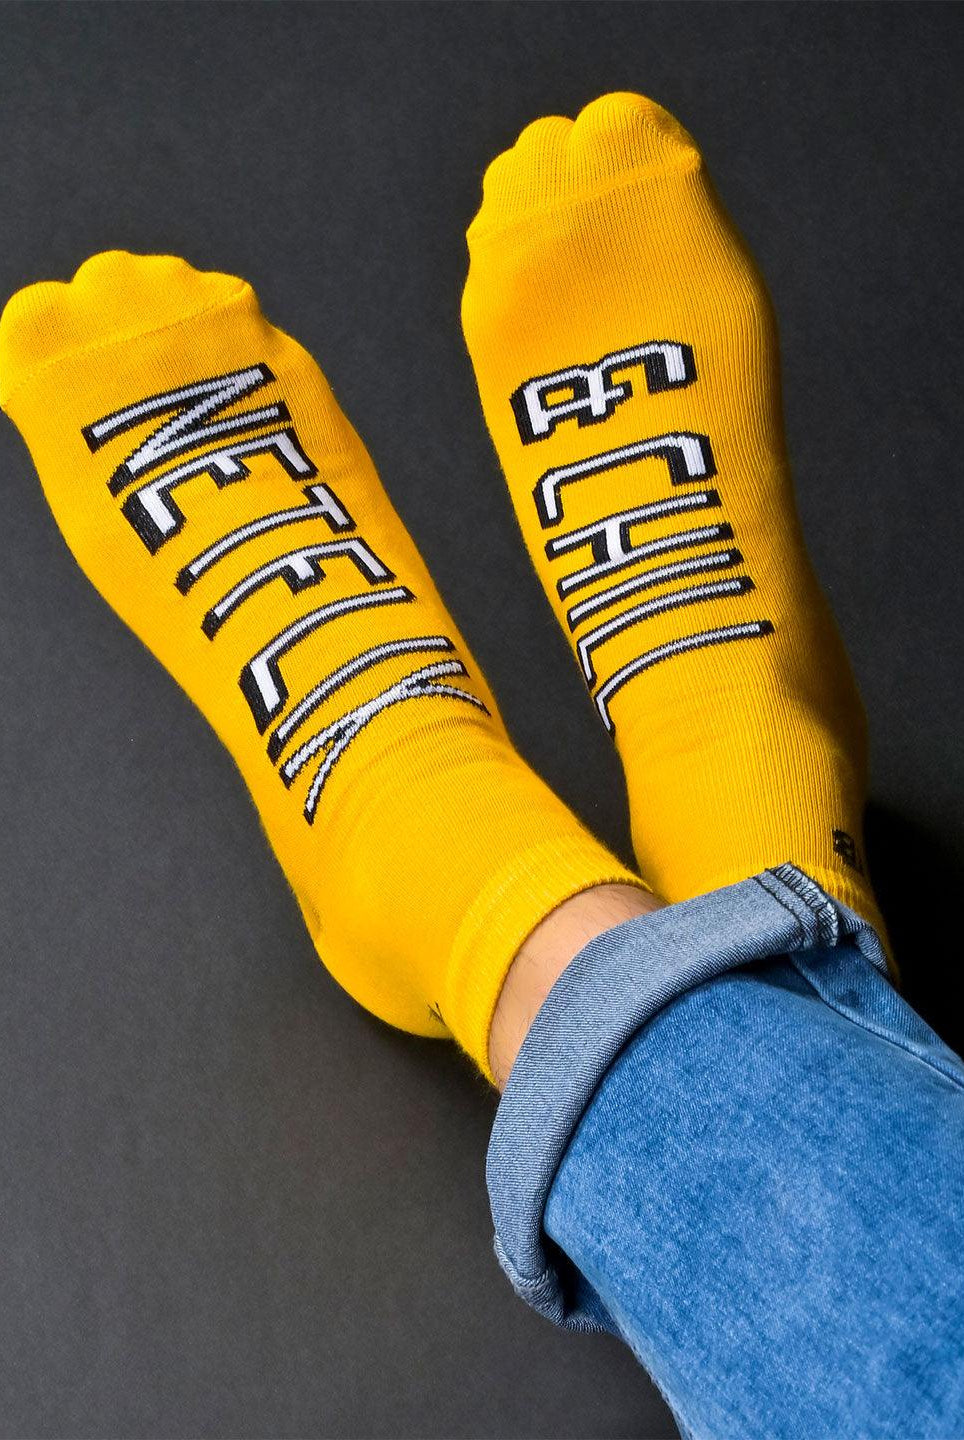 Yellow socks 